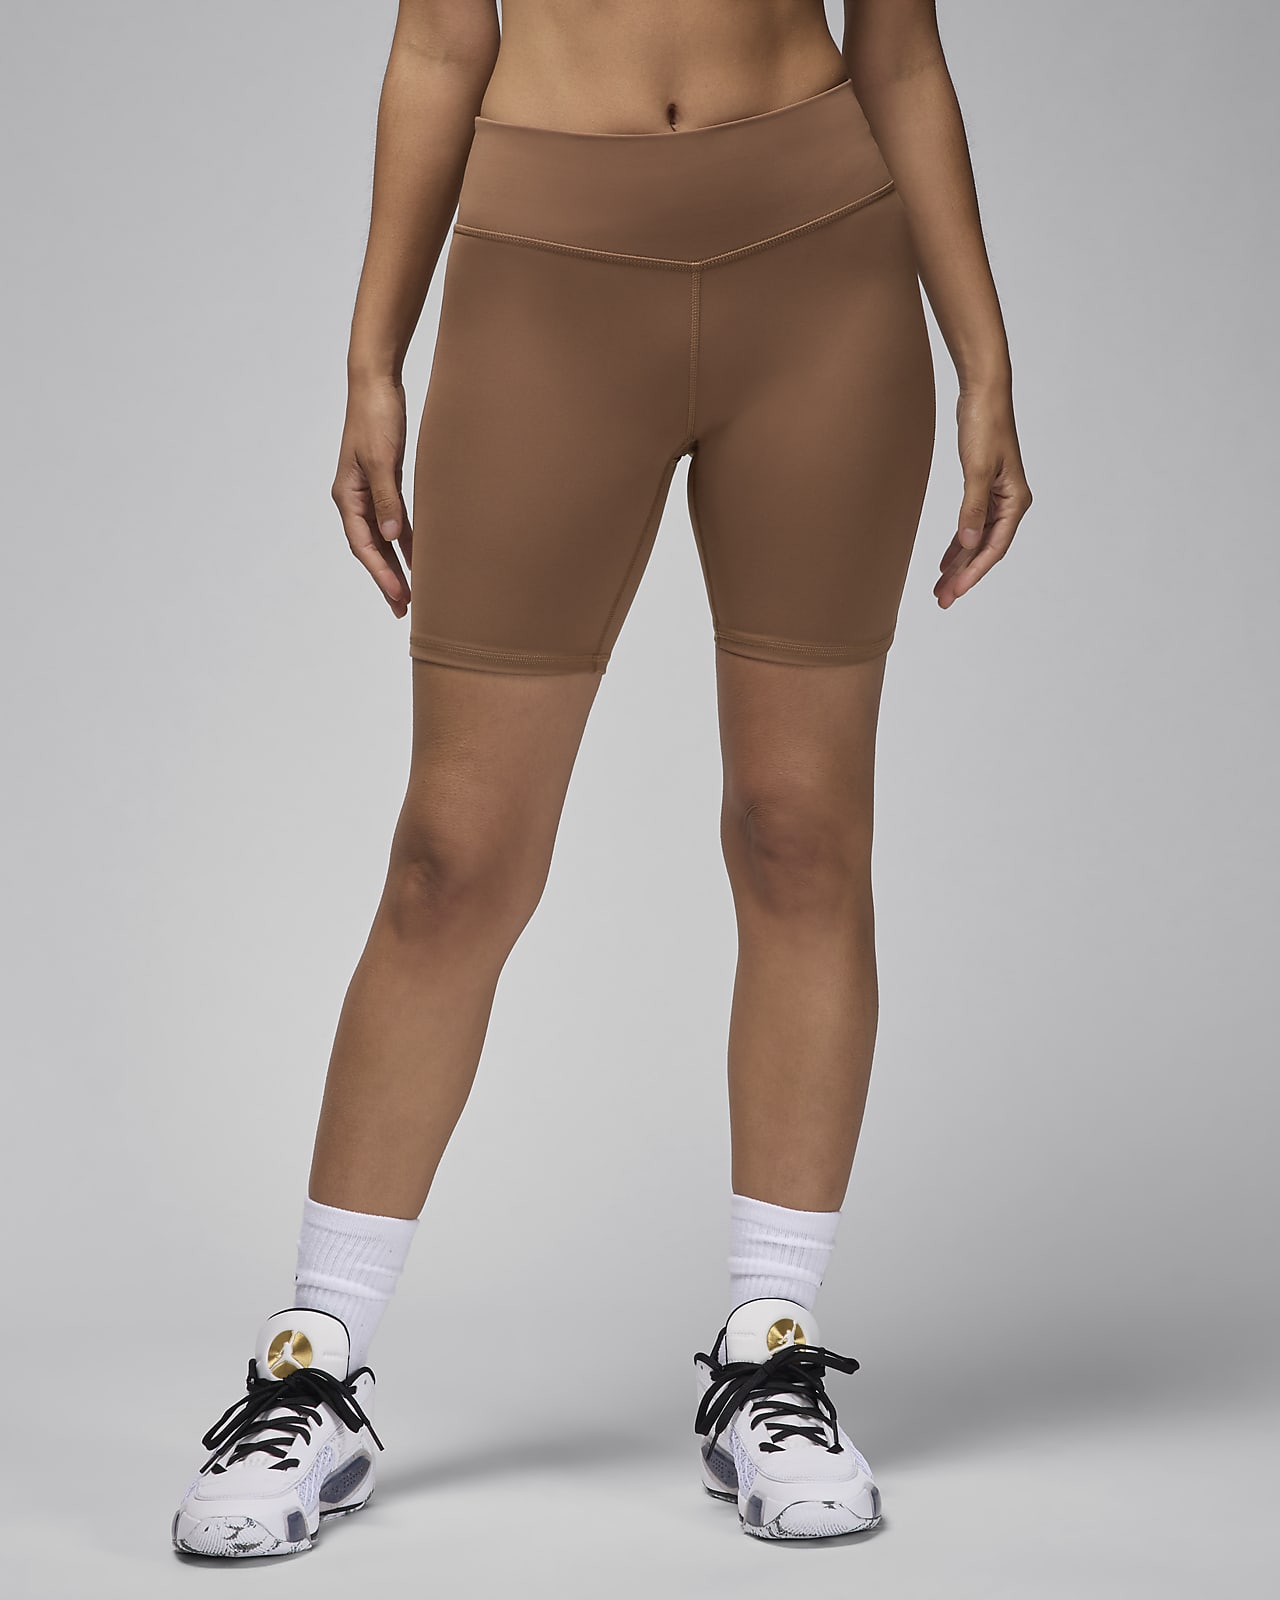 Jordan Sport Women's High-Waisted 18cm (approx.) Bike Shorts